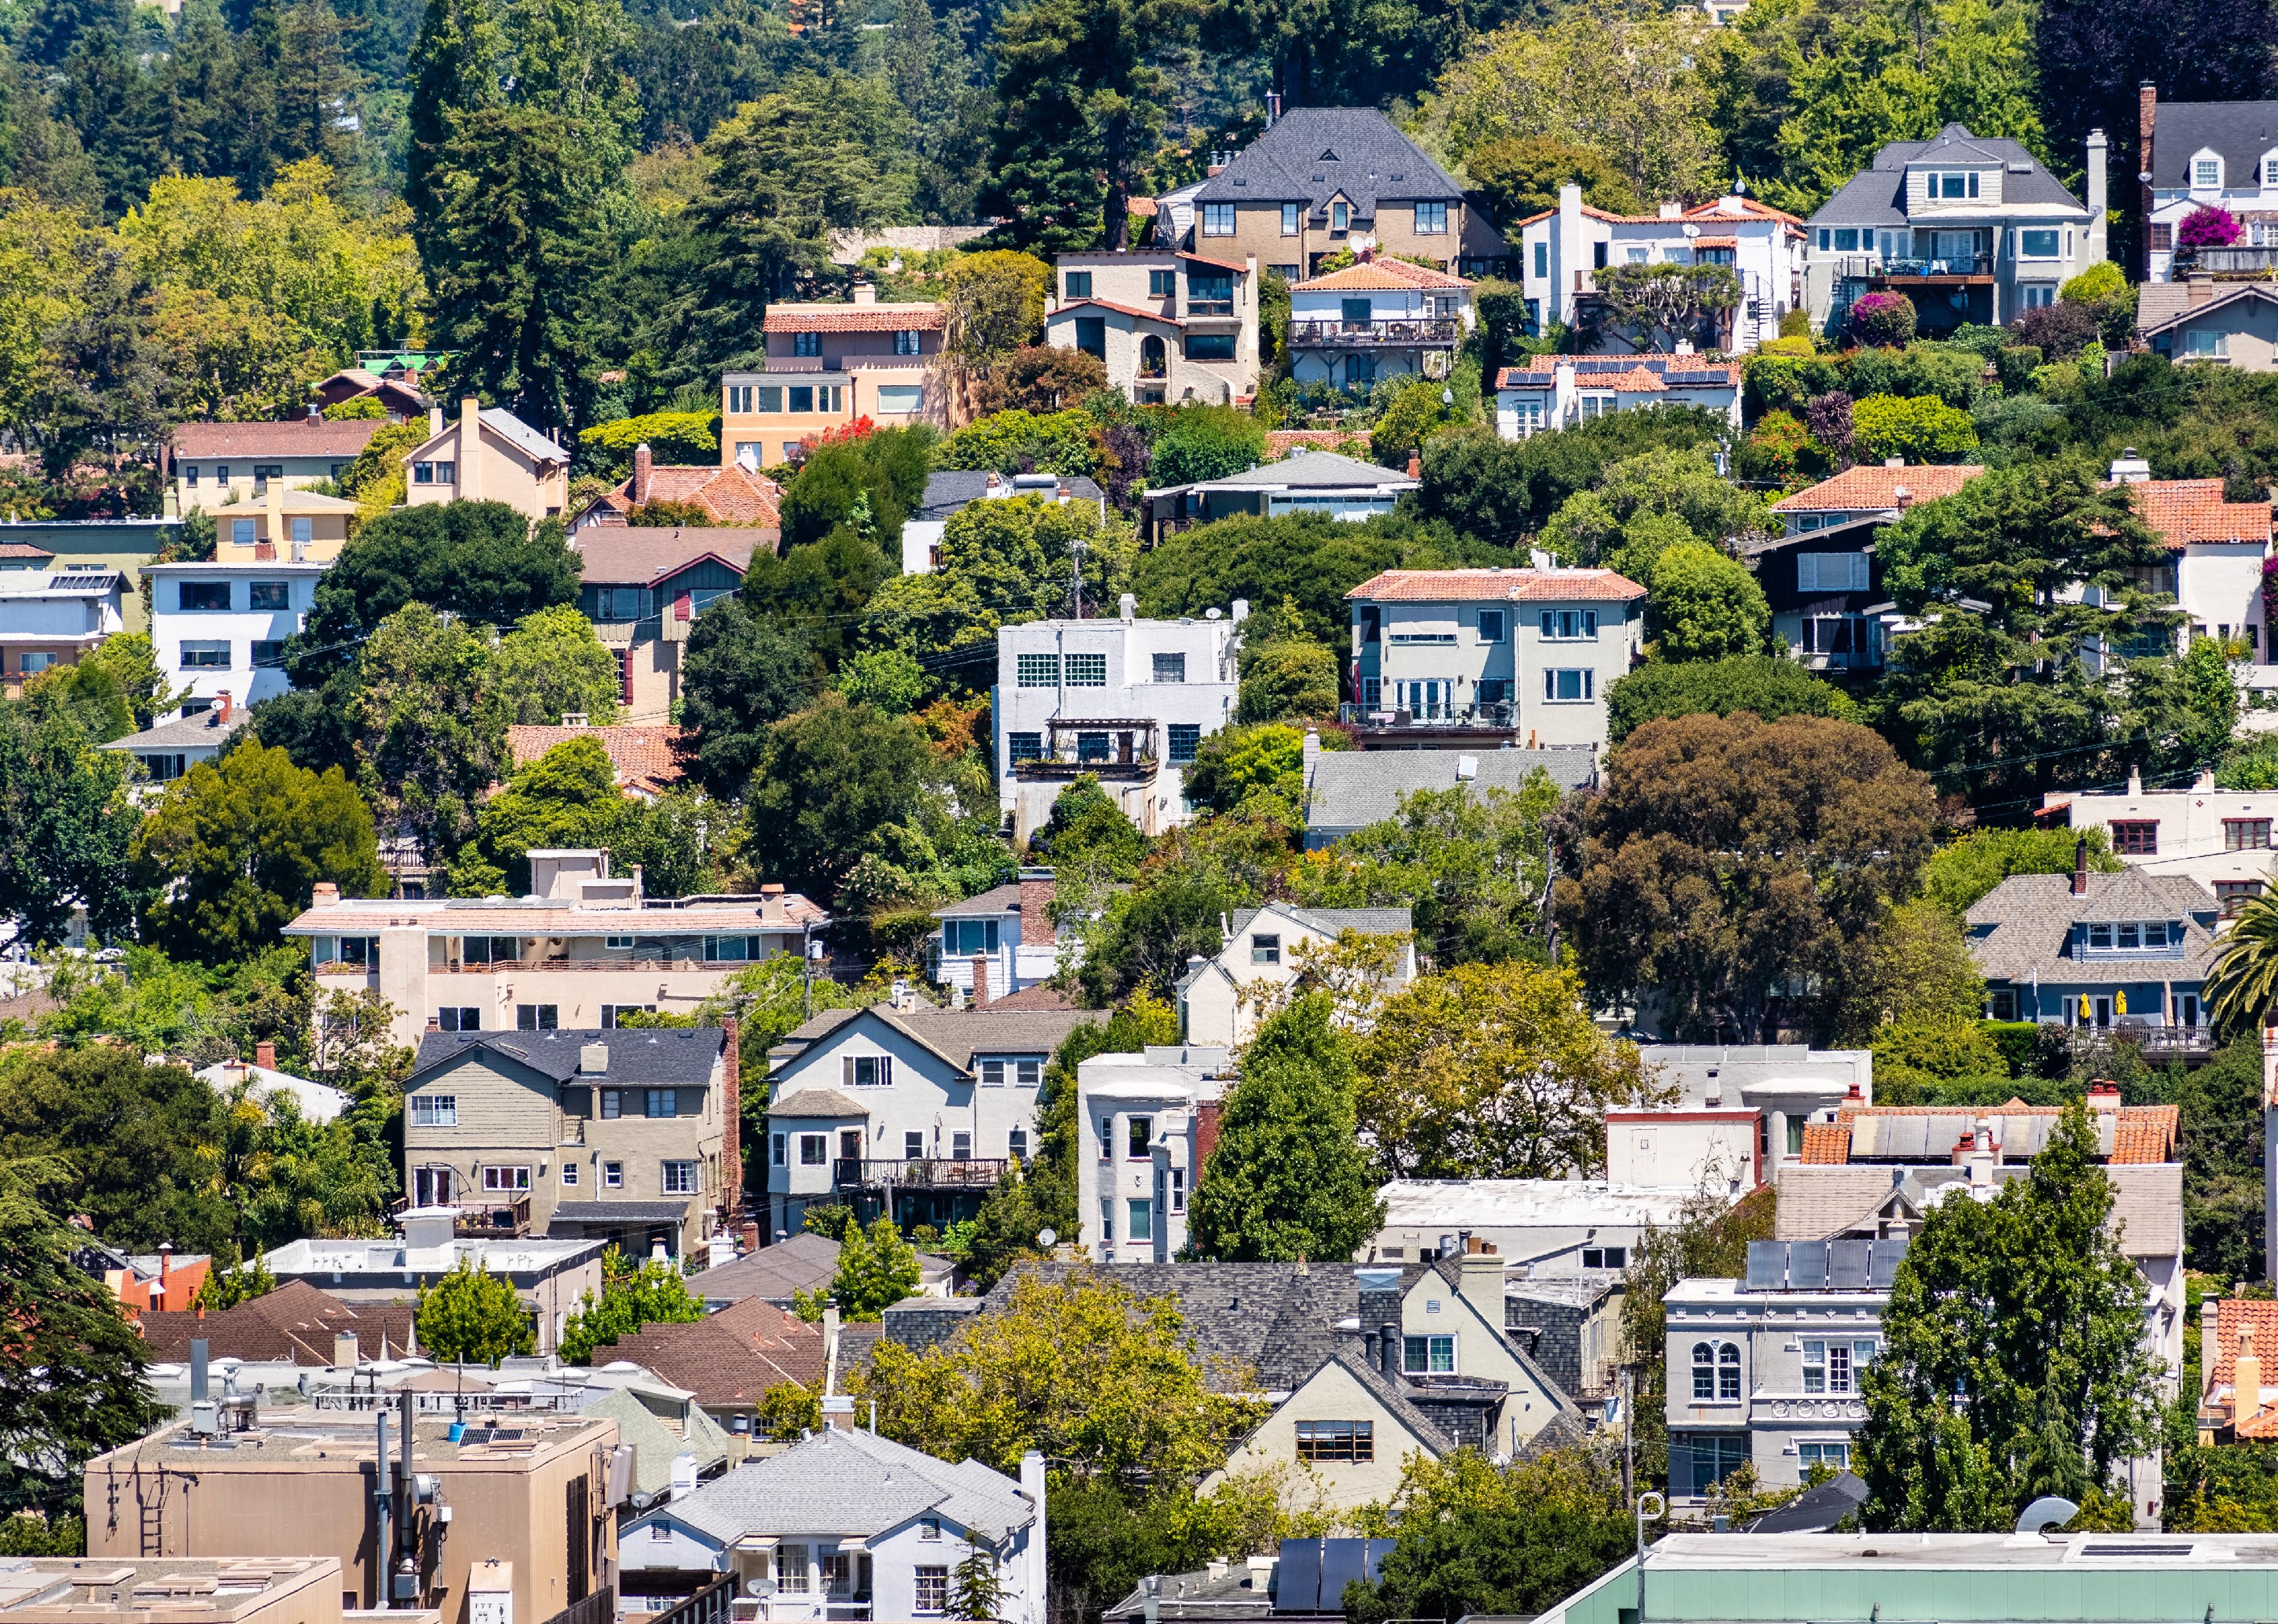 Aerial view of residential neighborhood Berkeley.